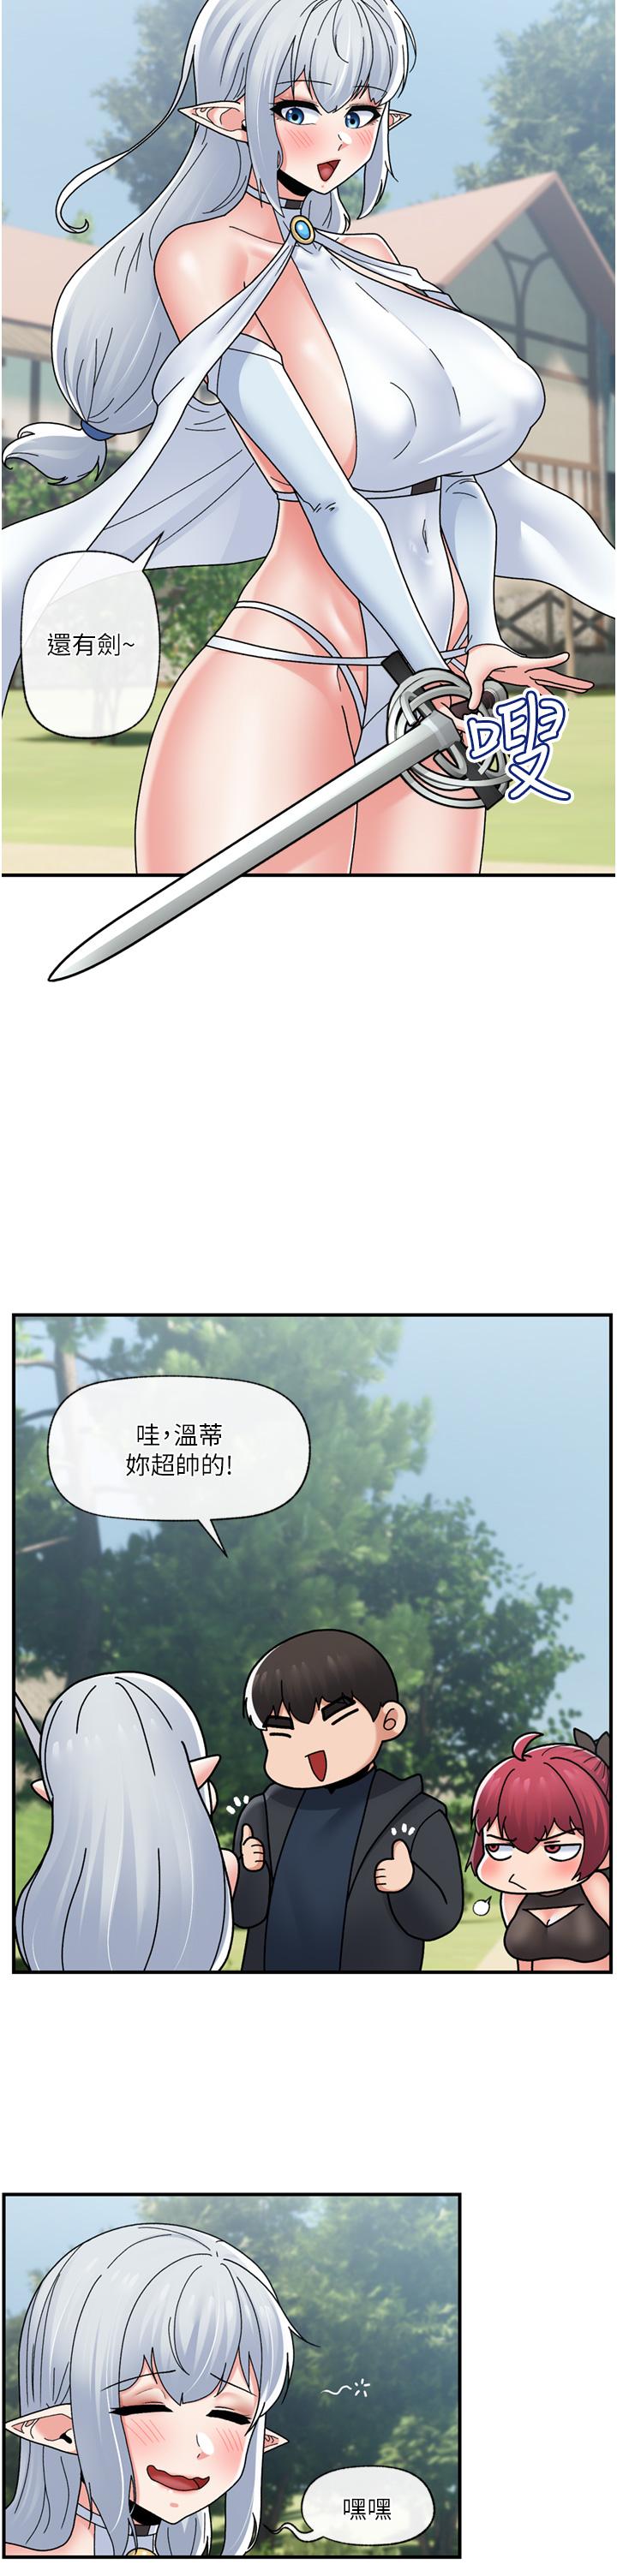 韩国污漫画 異世界催眠王 80话-踏上猎艳之旅 27